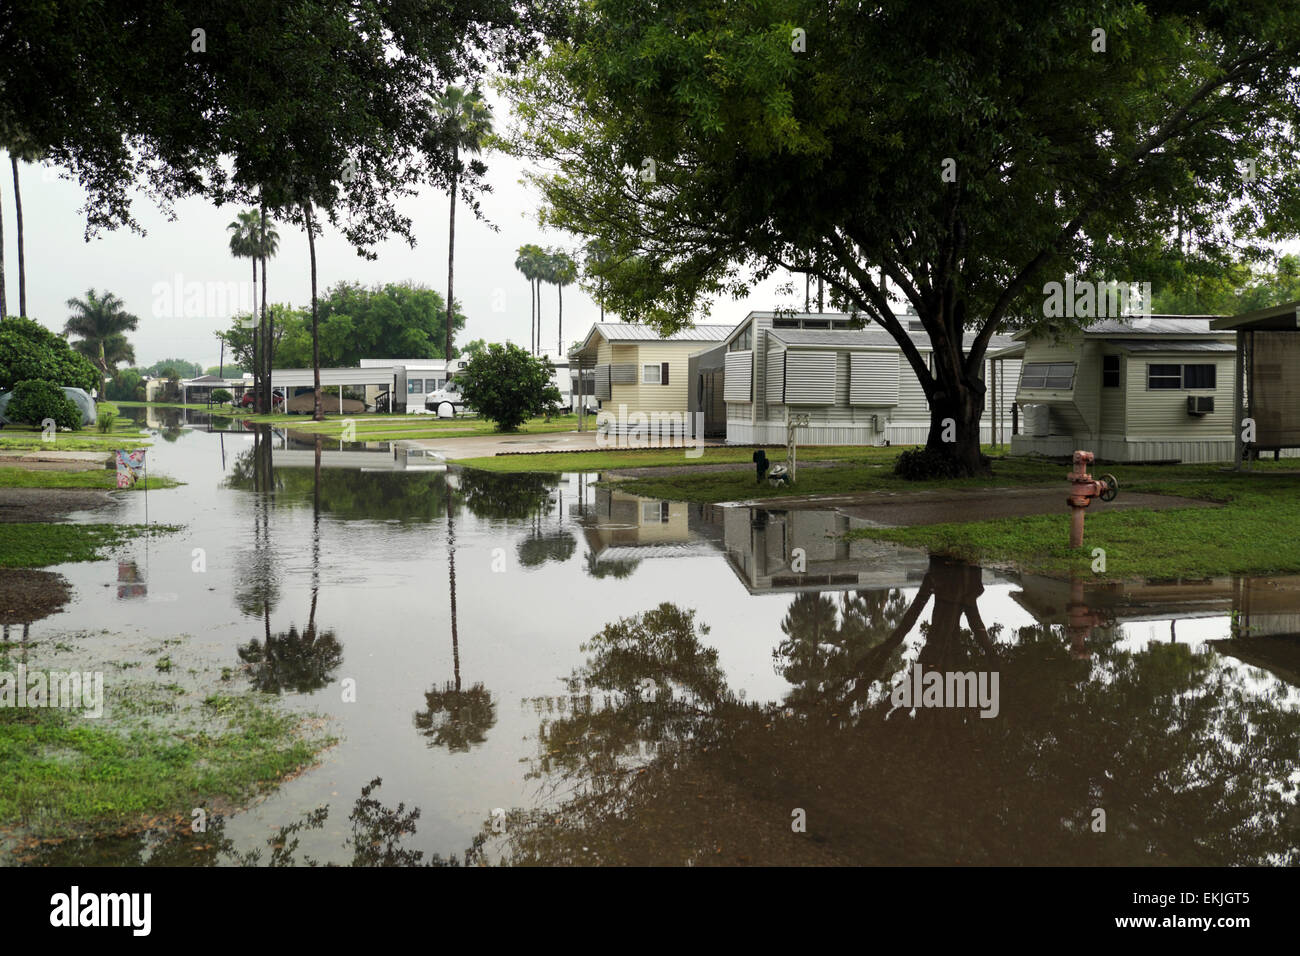 Aprile inondazioni in una casa mobile/RV Park in missione, Texas, Stati Uniti d'America Foto Stock